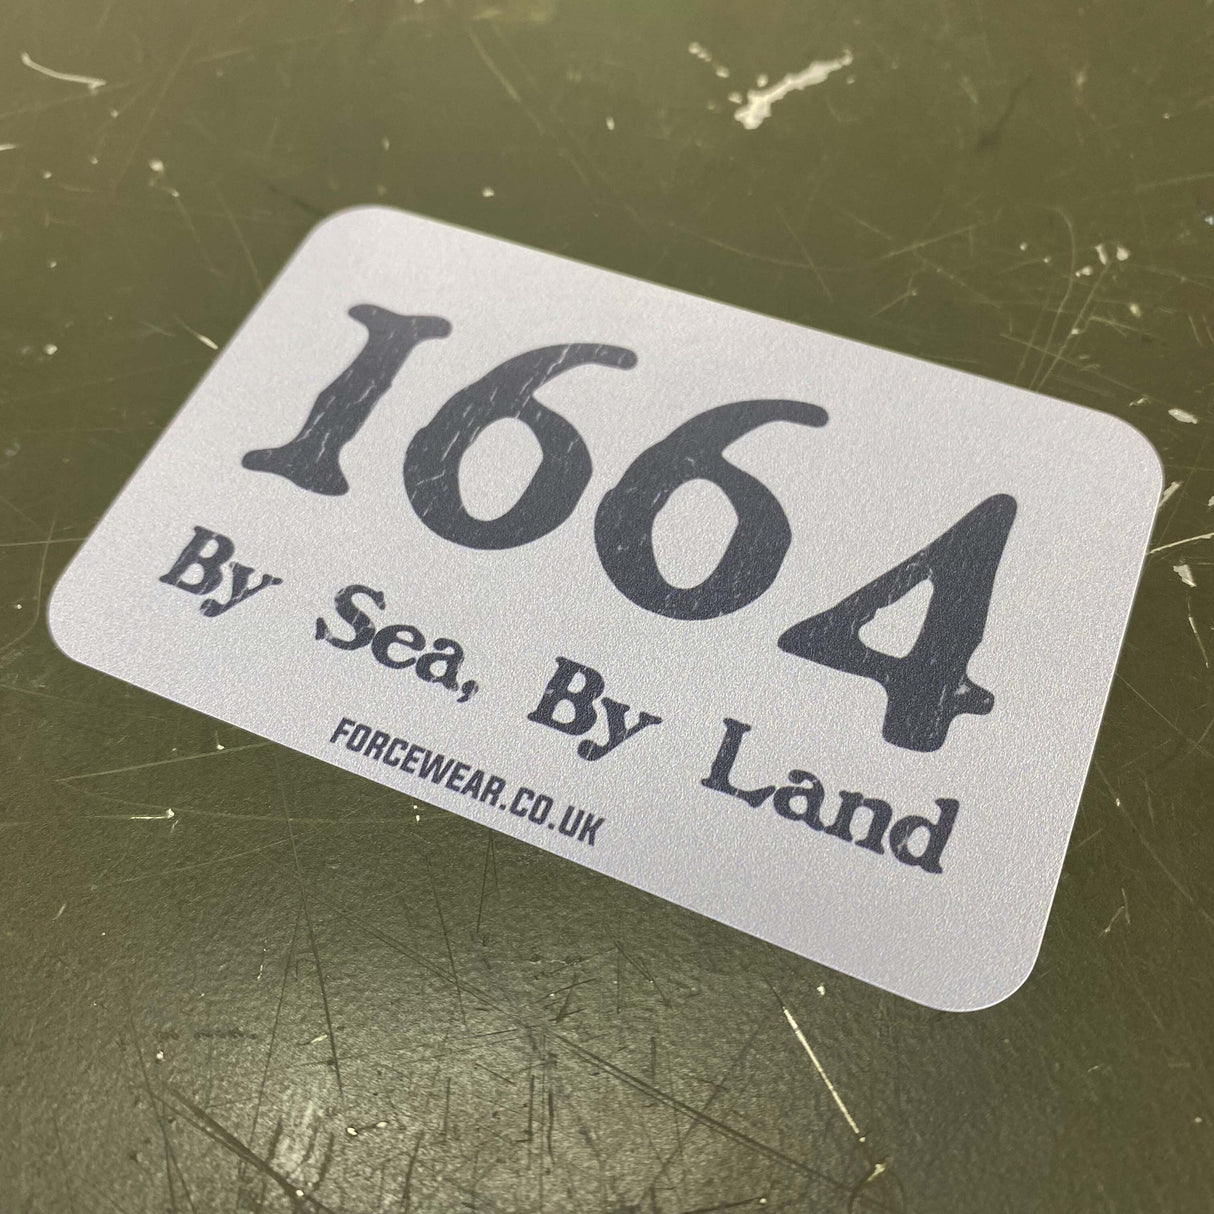 1664 BY SEA BY LAND STICKER 266 - Force Wear HQ